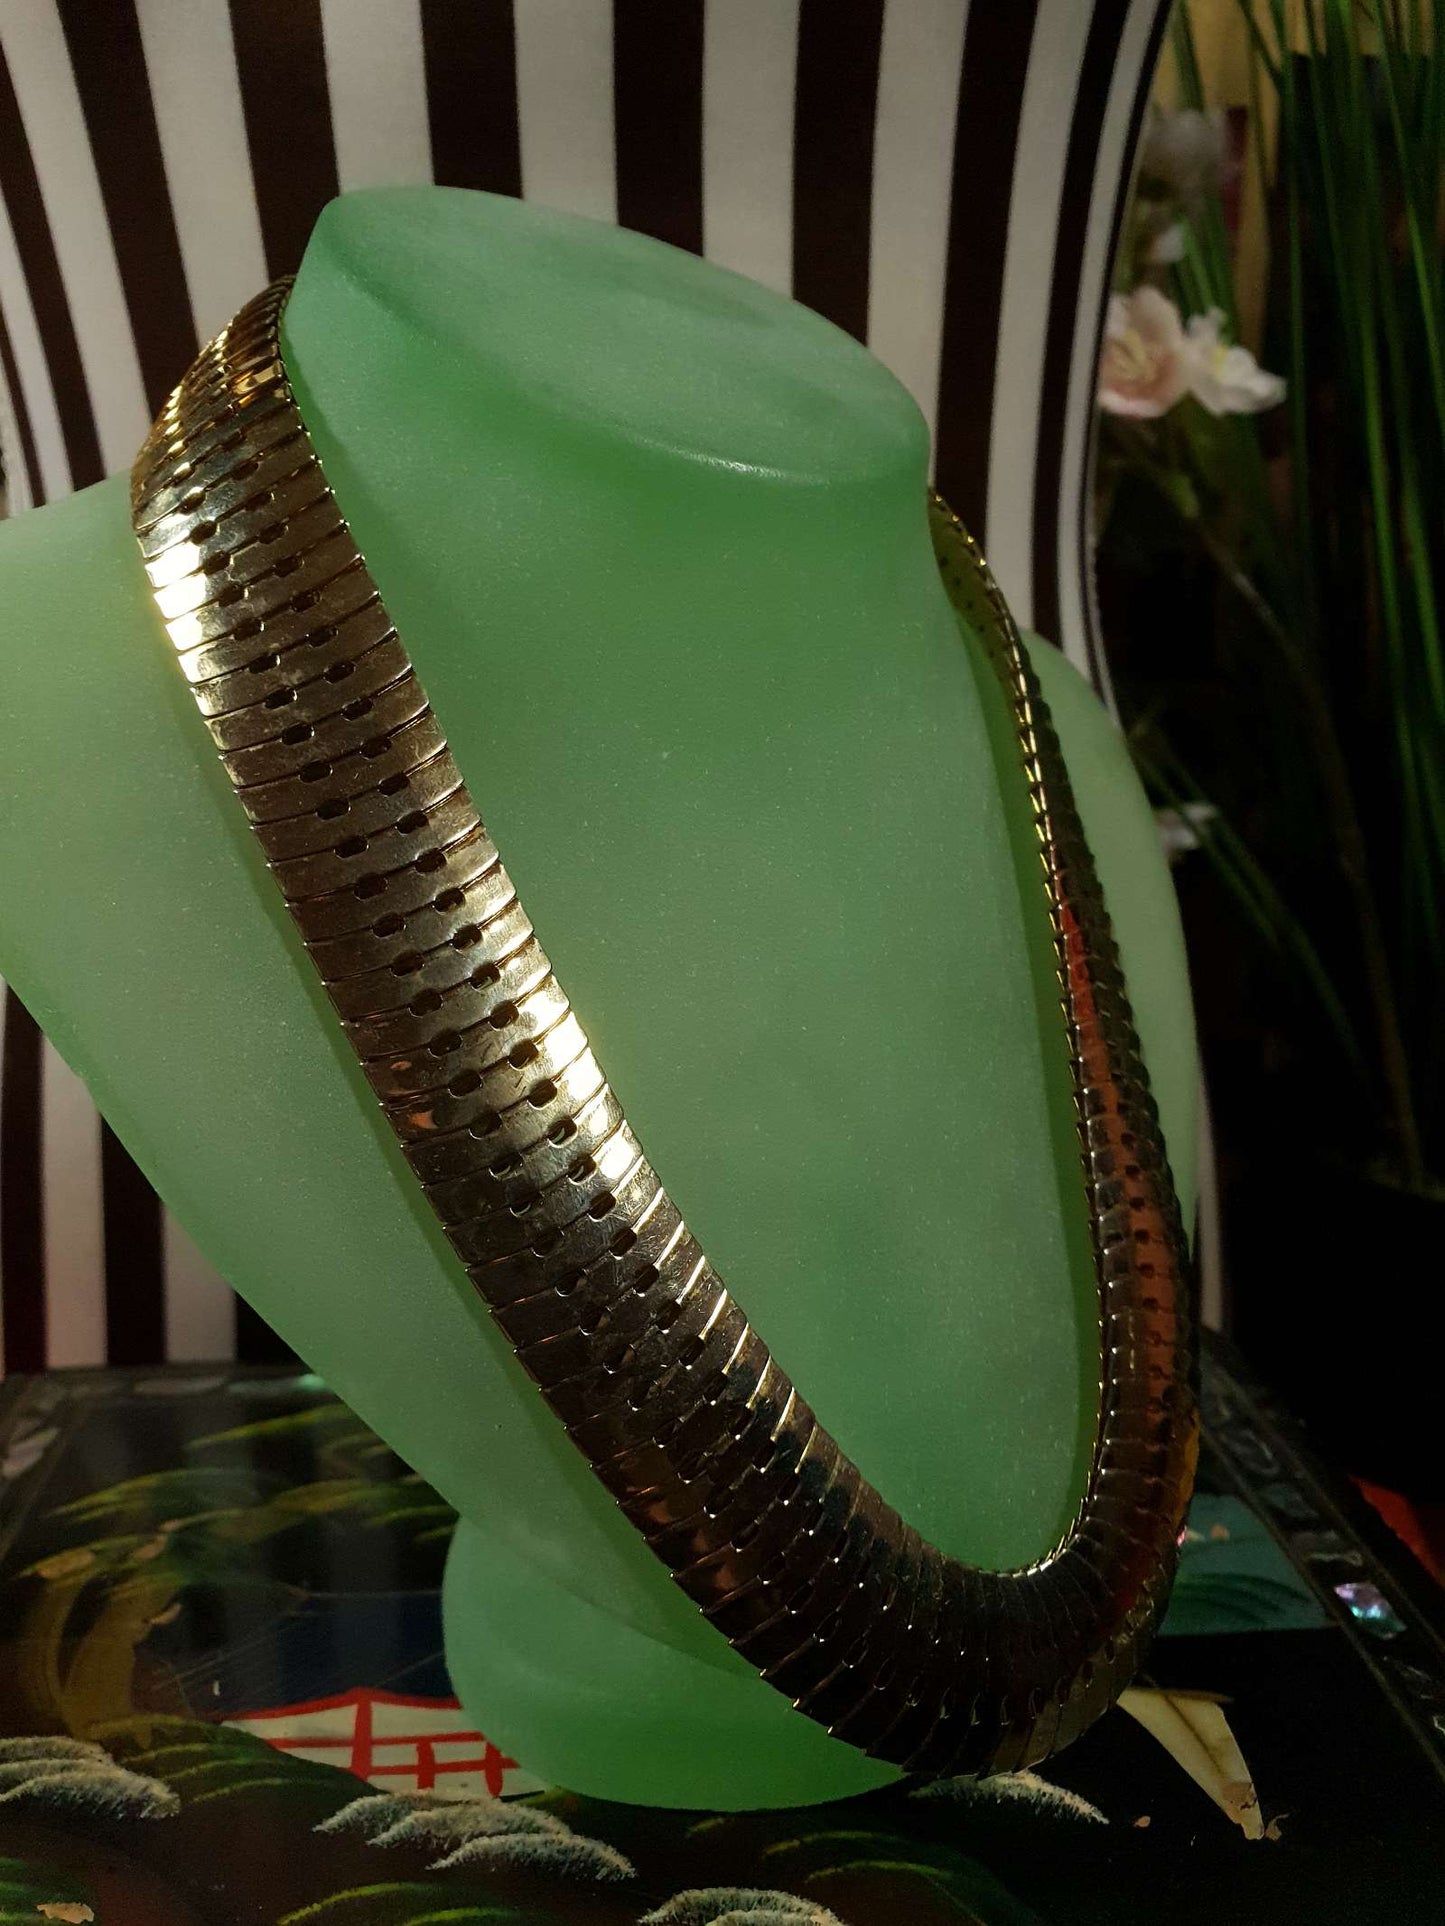 Vintage 1970s Gold Tone Snake Chain Necklace Bracelet Set Demi Parure - RARE